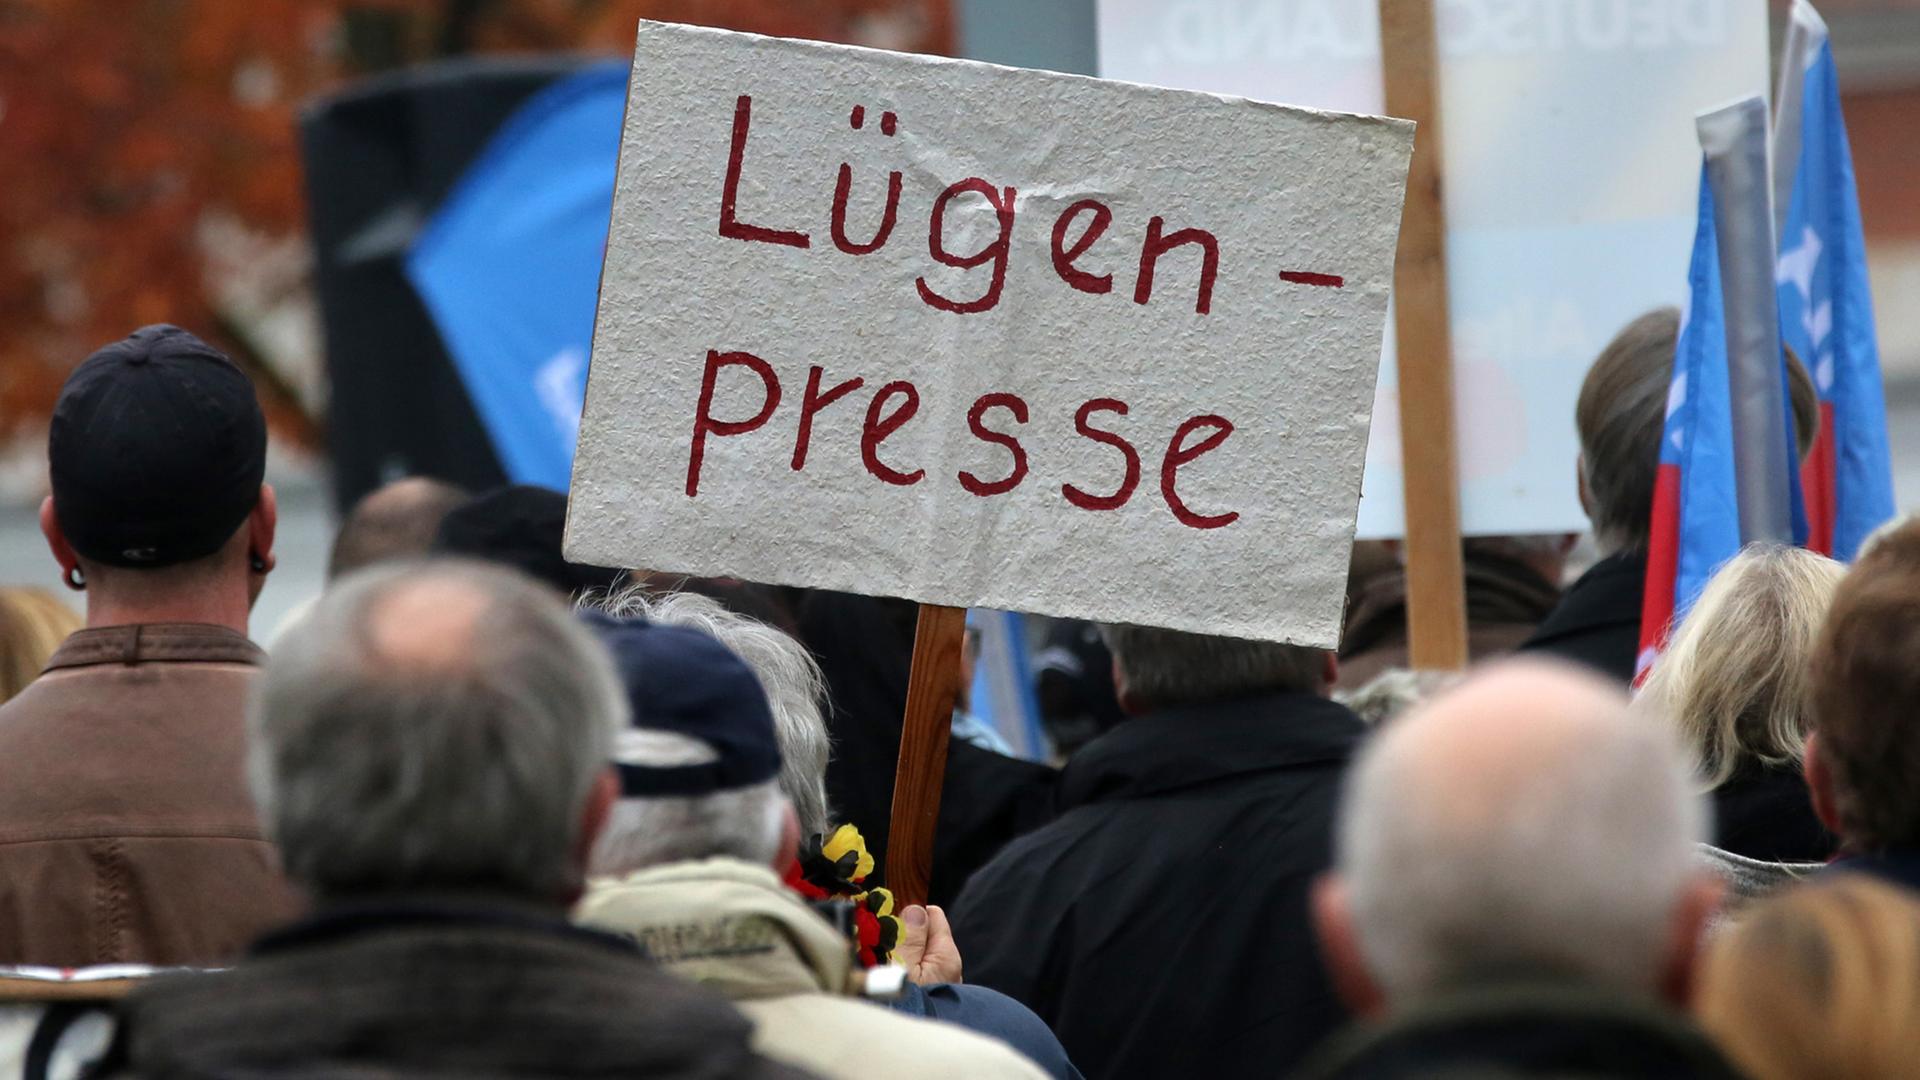 Anhänger der Alternative für Deutschland (AfD) demonstrieren in Rostock gegen die deutsche Asylpolitik, auf einem Schild steht "Lügenpresse".